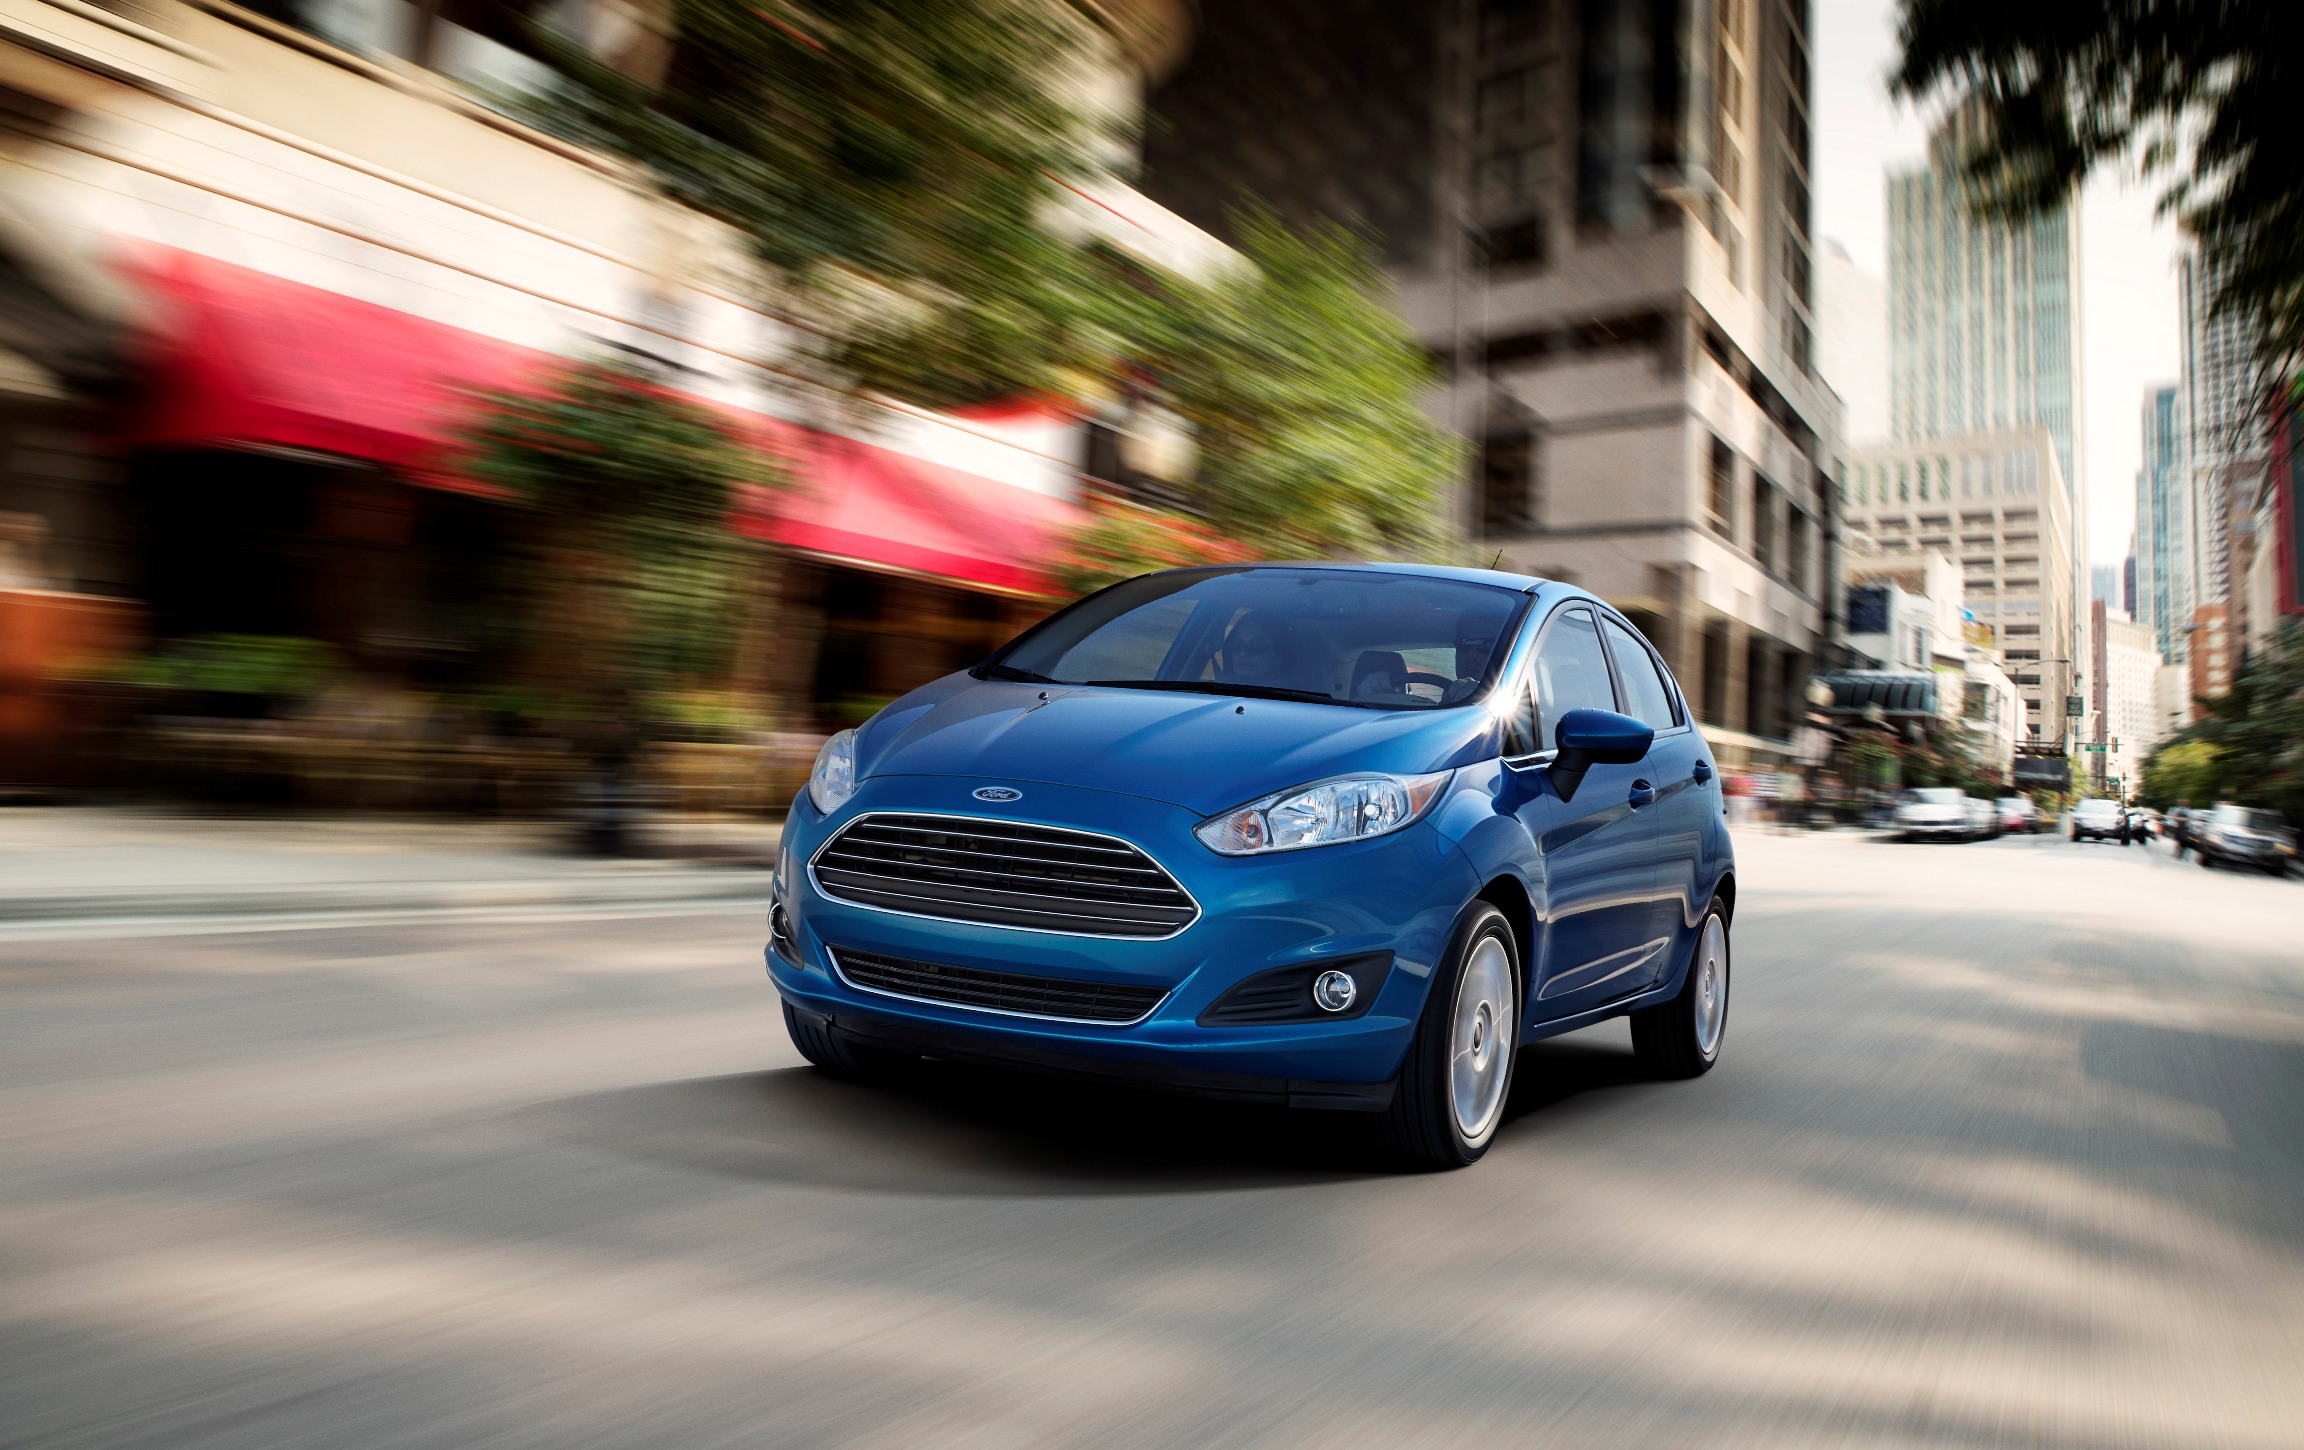  Ranger, Ecosport và Transit : 3 dòng xe chủ lực của Ford